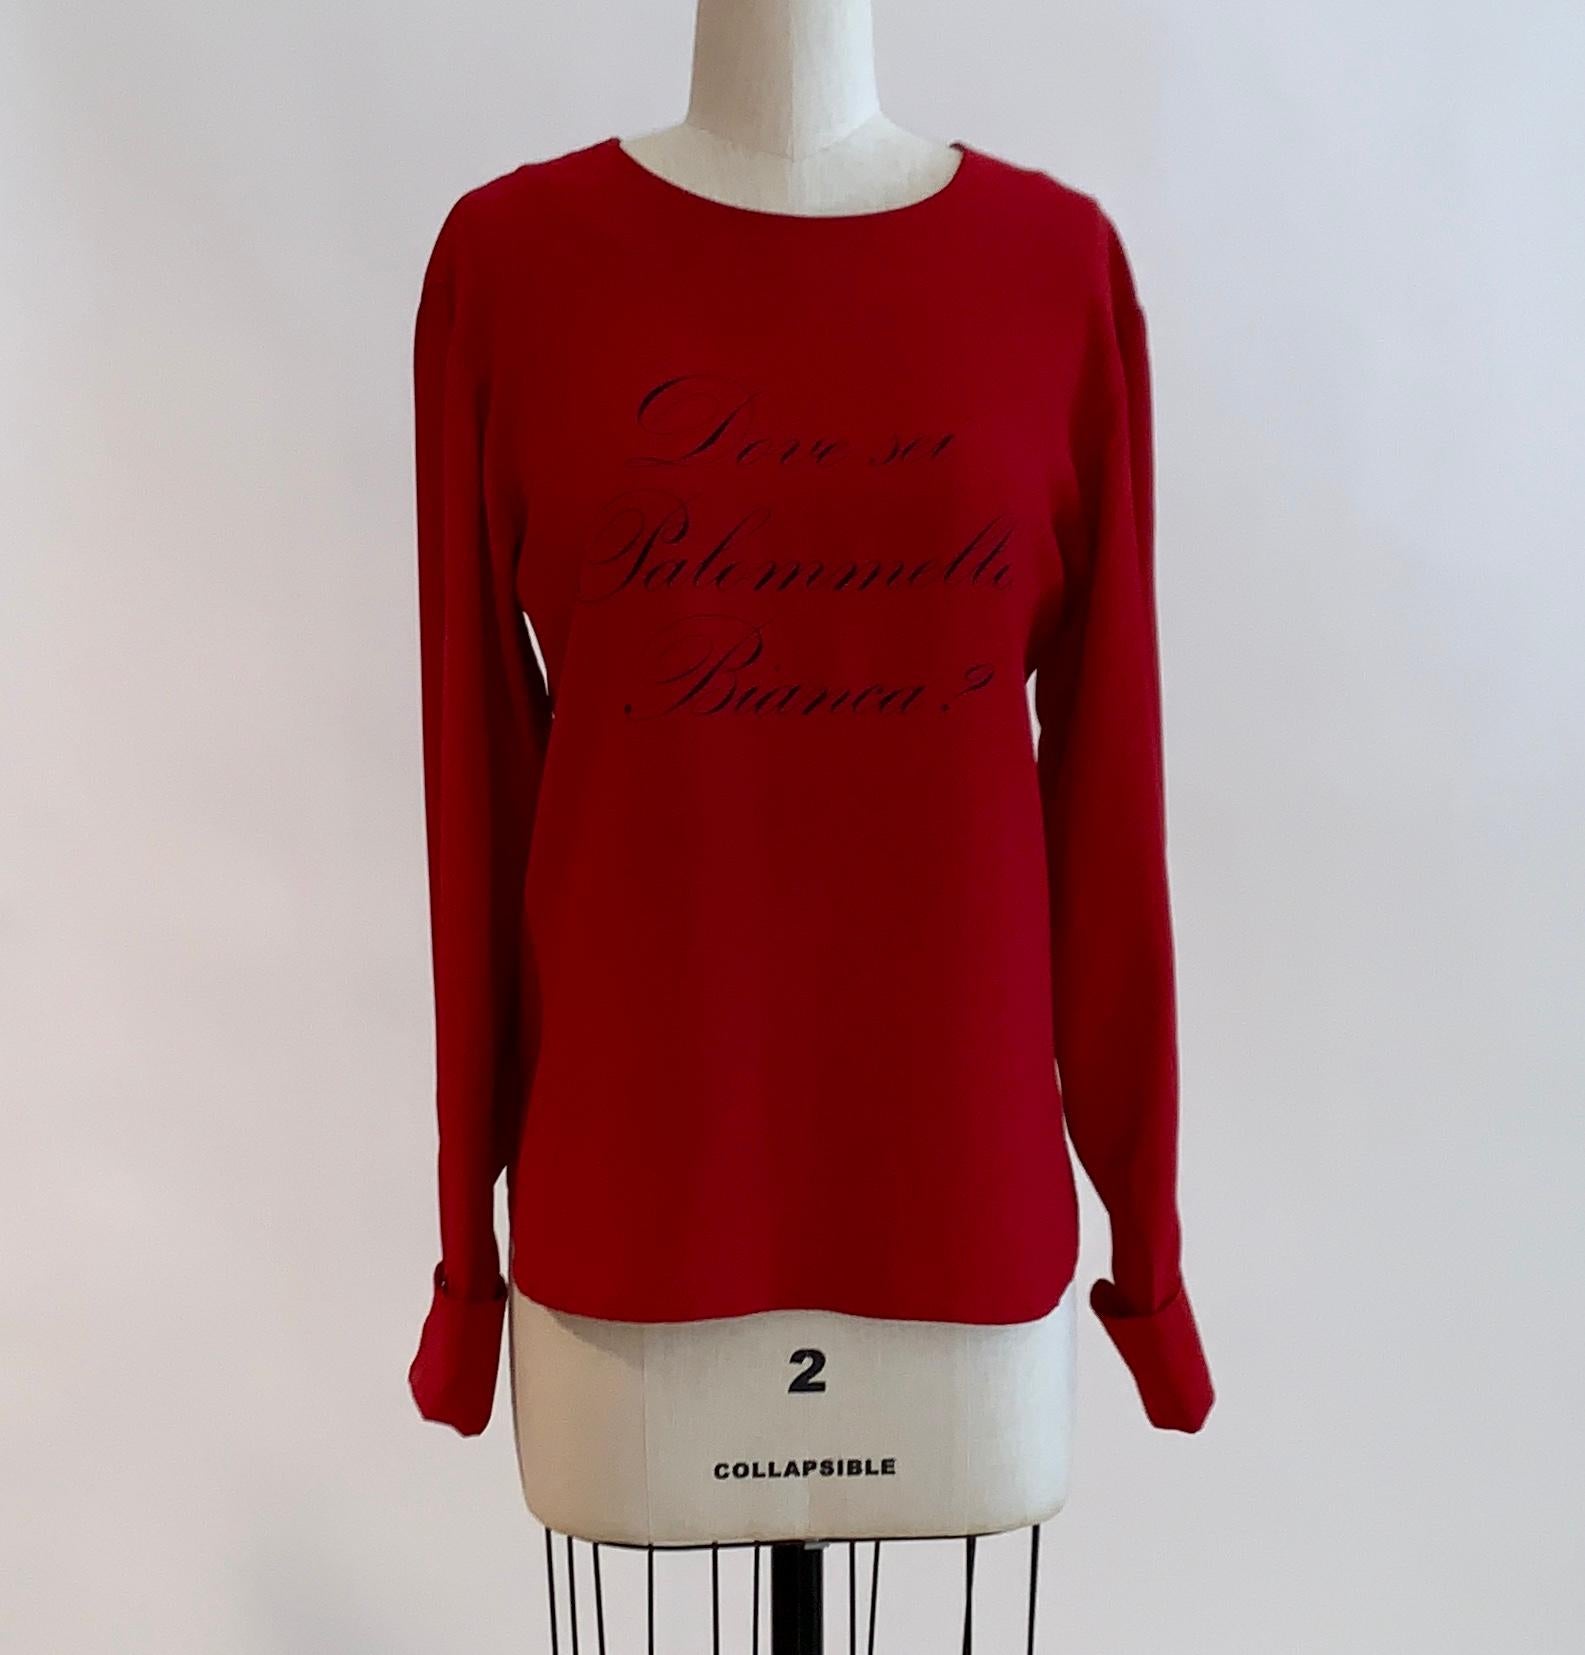 Chemisier rouge à manches longues Moschino Couture vintage des années 1980 avec l'inscription 